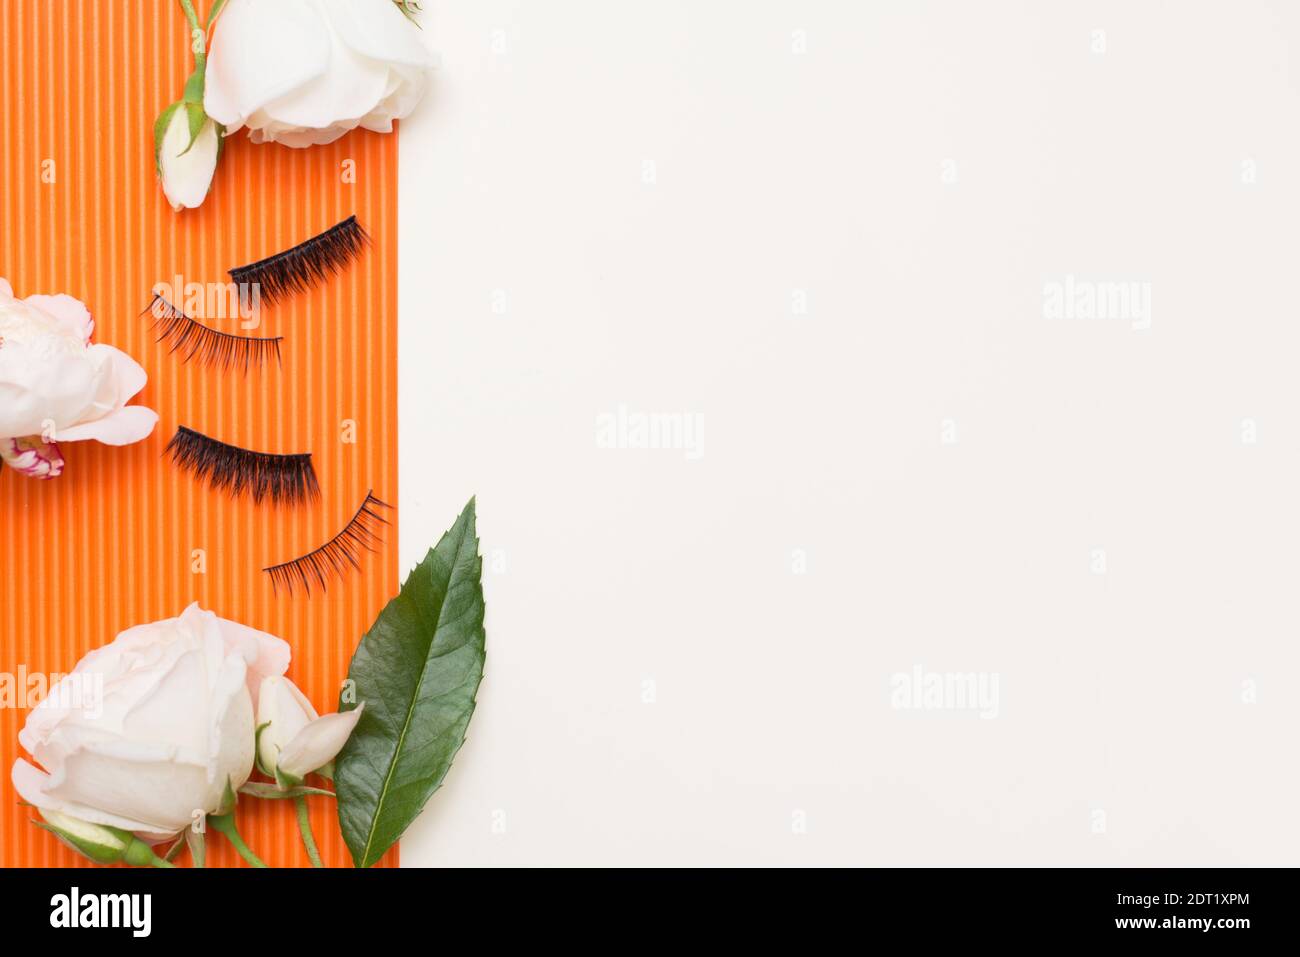 Wimpern und weiße Rosen auf orangefarbenem und weißem Hintergrund mit einem Kopierbereich. Stockfoto